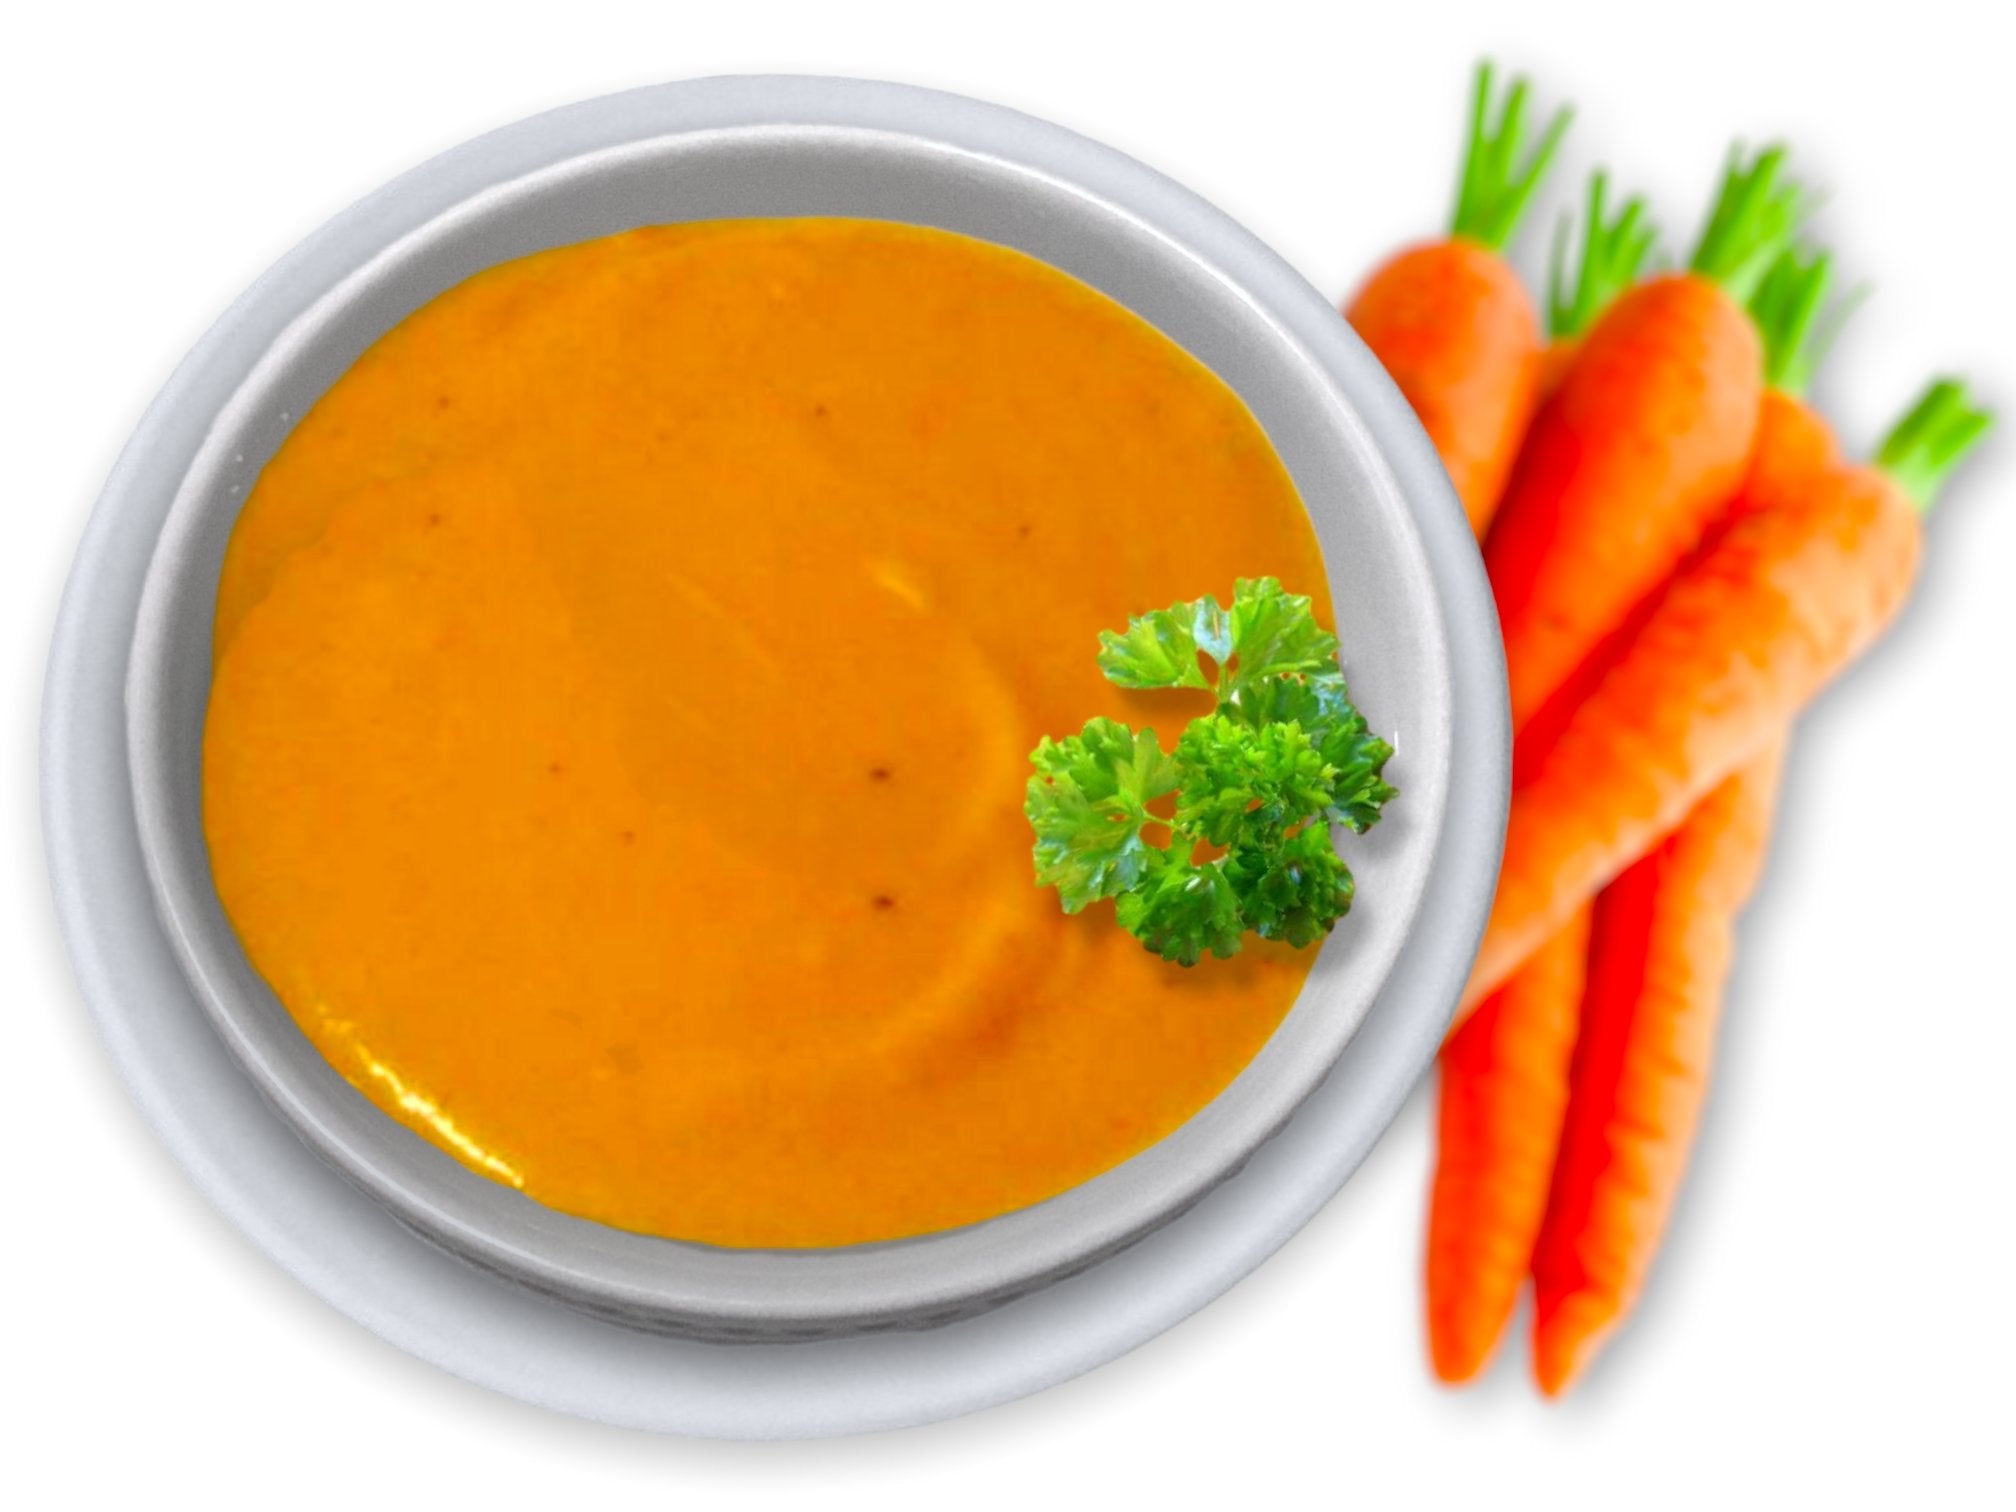 Crema de zanahorias casera (6 raciones) - Cositas Güenas